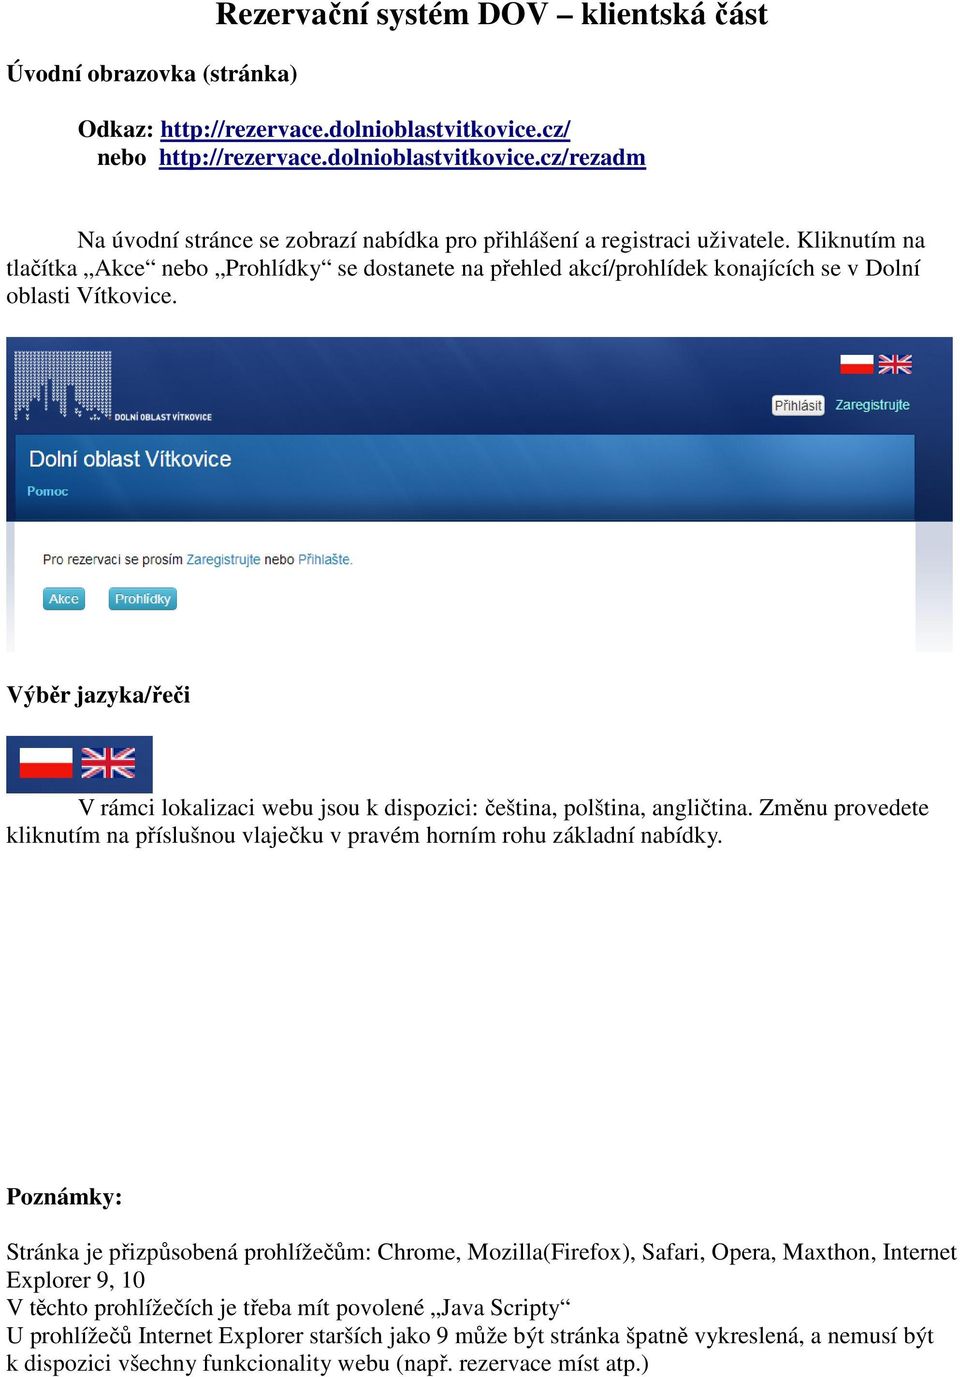 Výběr jazyka/řeči V rámci lokalizaci webu jsou k dispozici: čeština, polština, angličtina. Změnu provedete kliknutím na příslušnou vlaječku v pravém horním rohu základní nabídky.